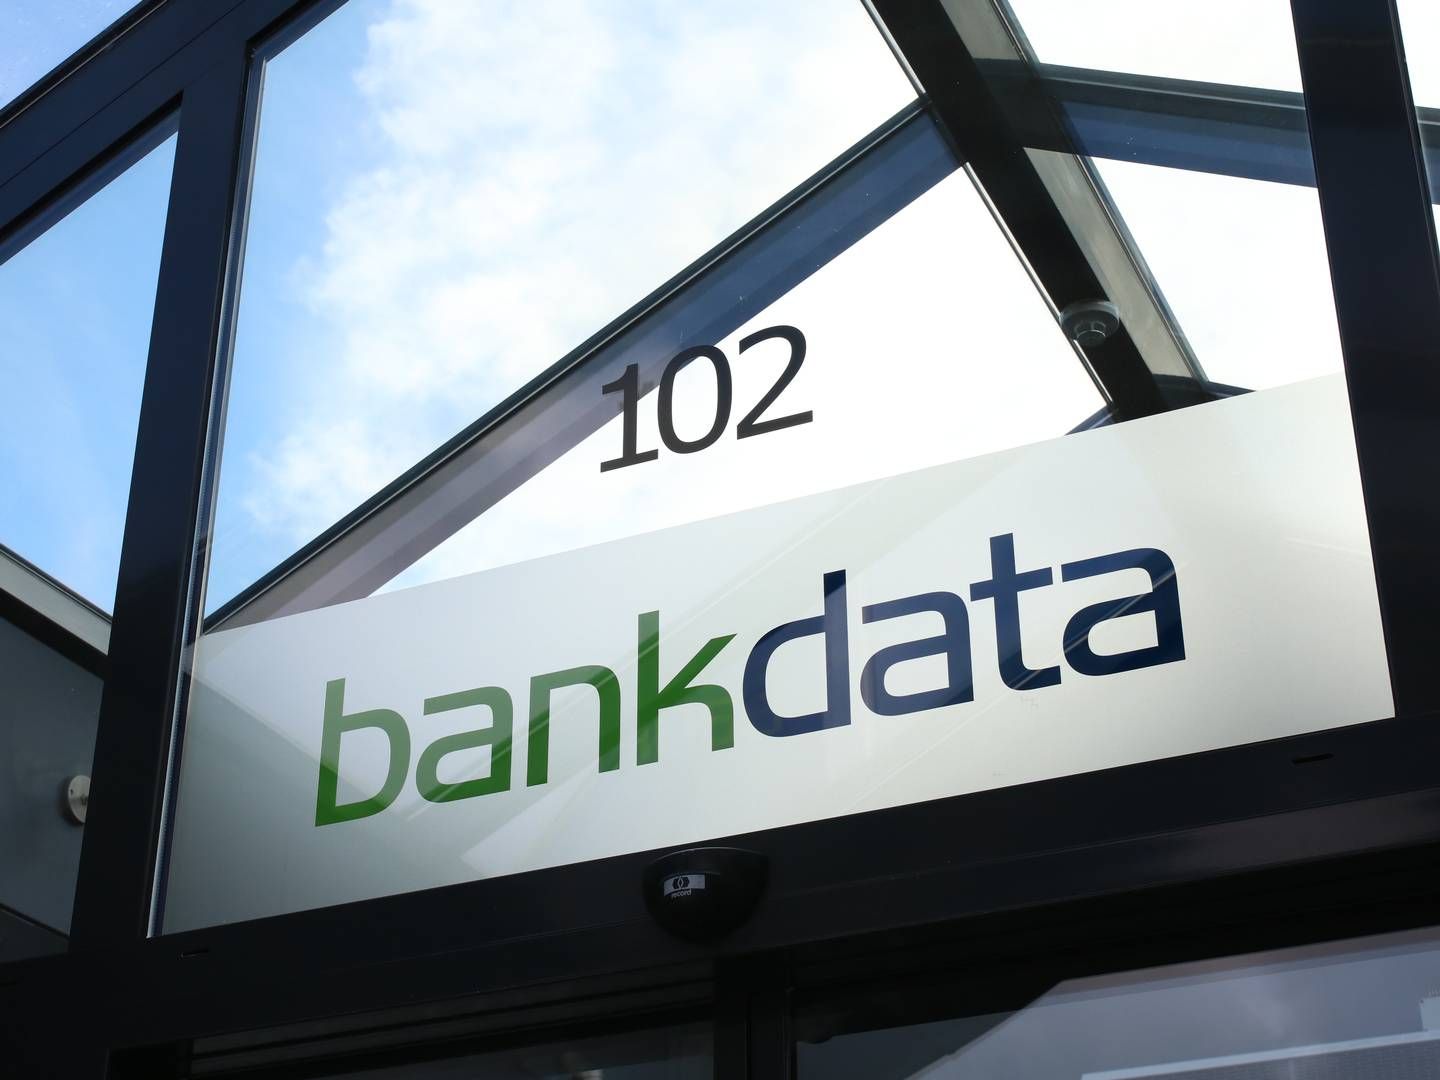 Bankdata er den ene af tre datacentraler på markedet. De to andre er BEC og SDC. | Foto: bankdata